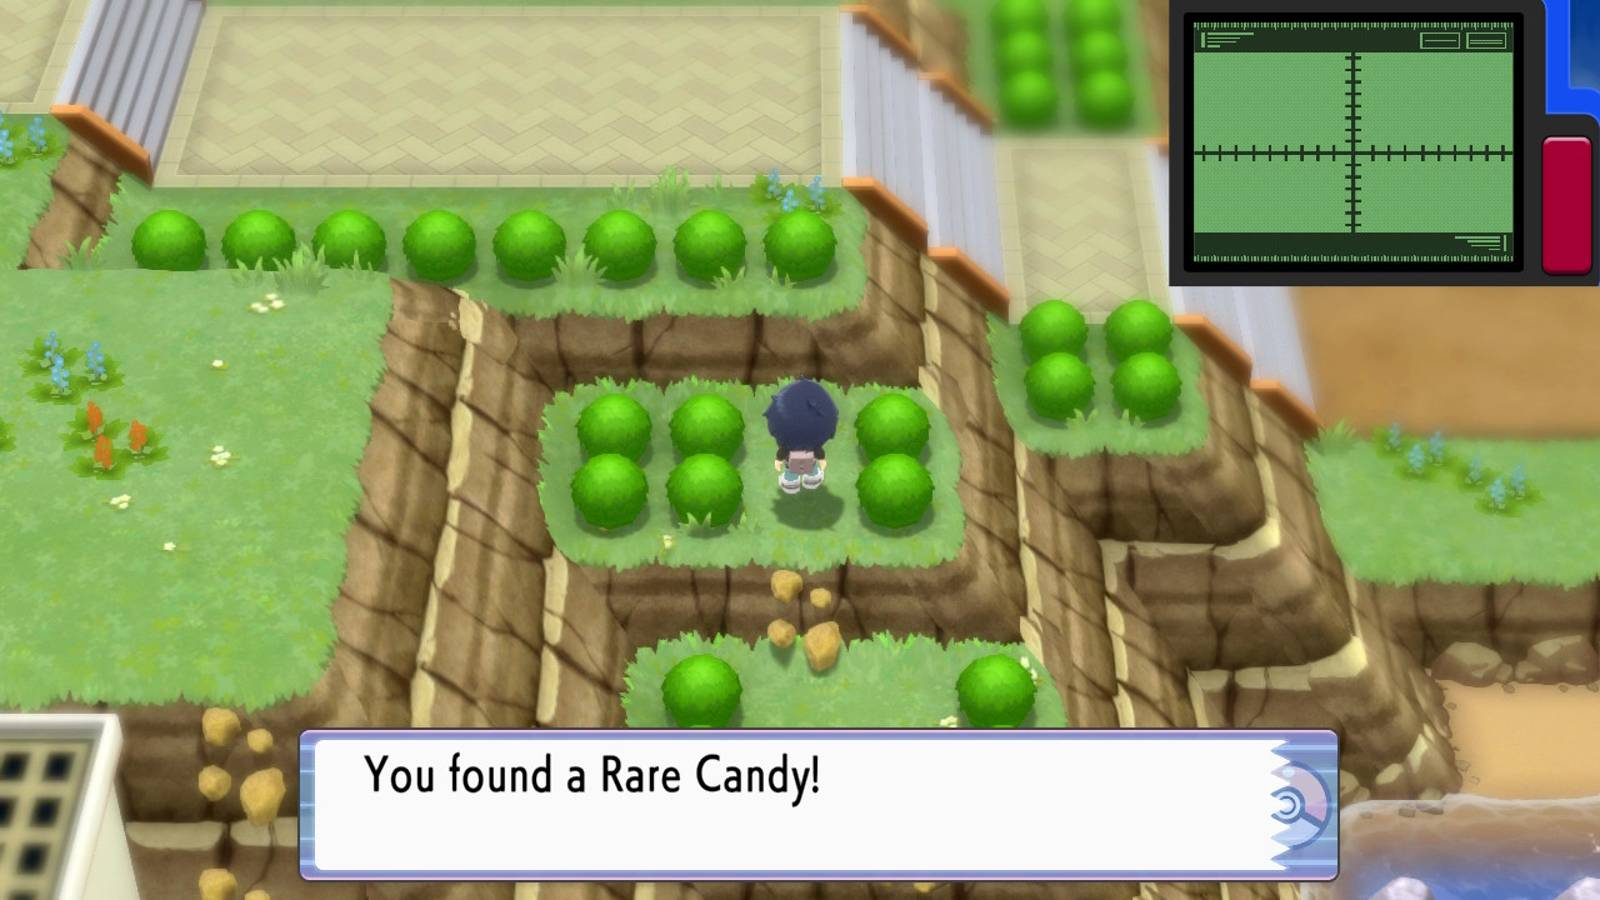  a játékosok ritka cukorkát találhatnak a Pokemon Brilliant Diamond és a Shining Pearl Sinnoh régiójában.